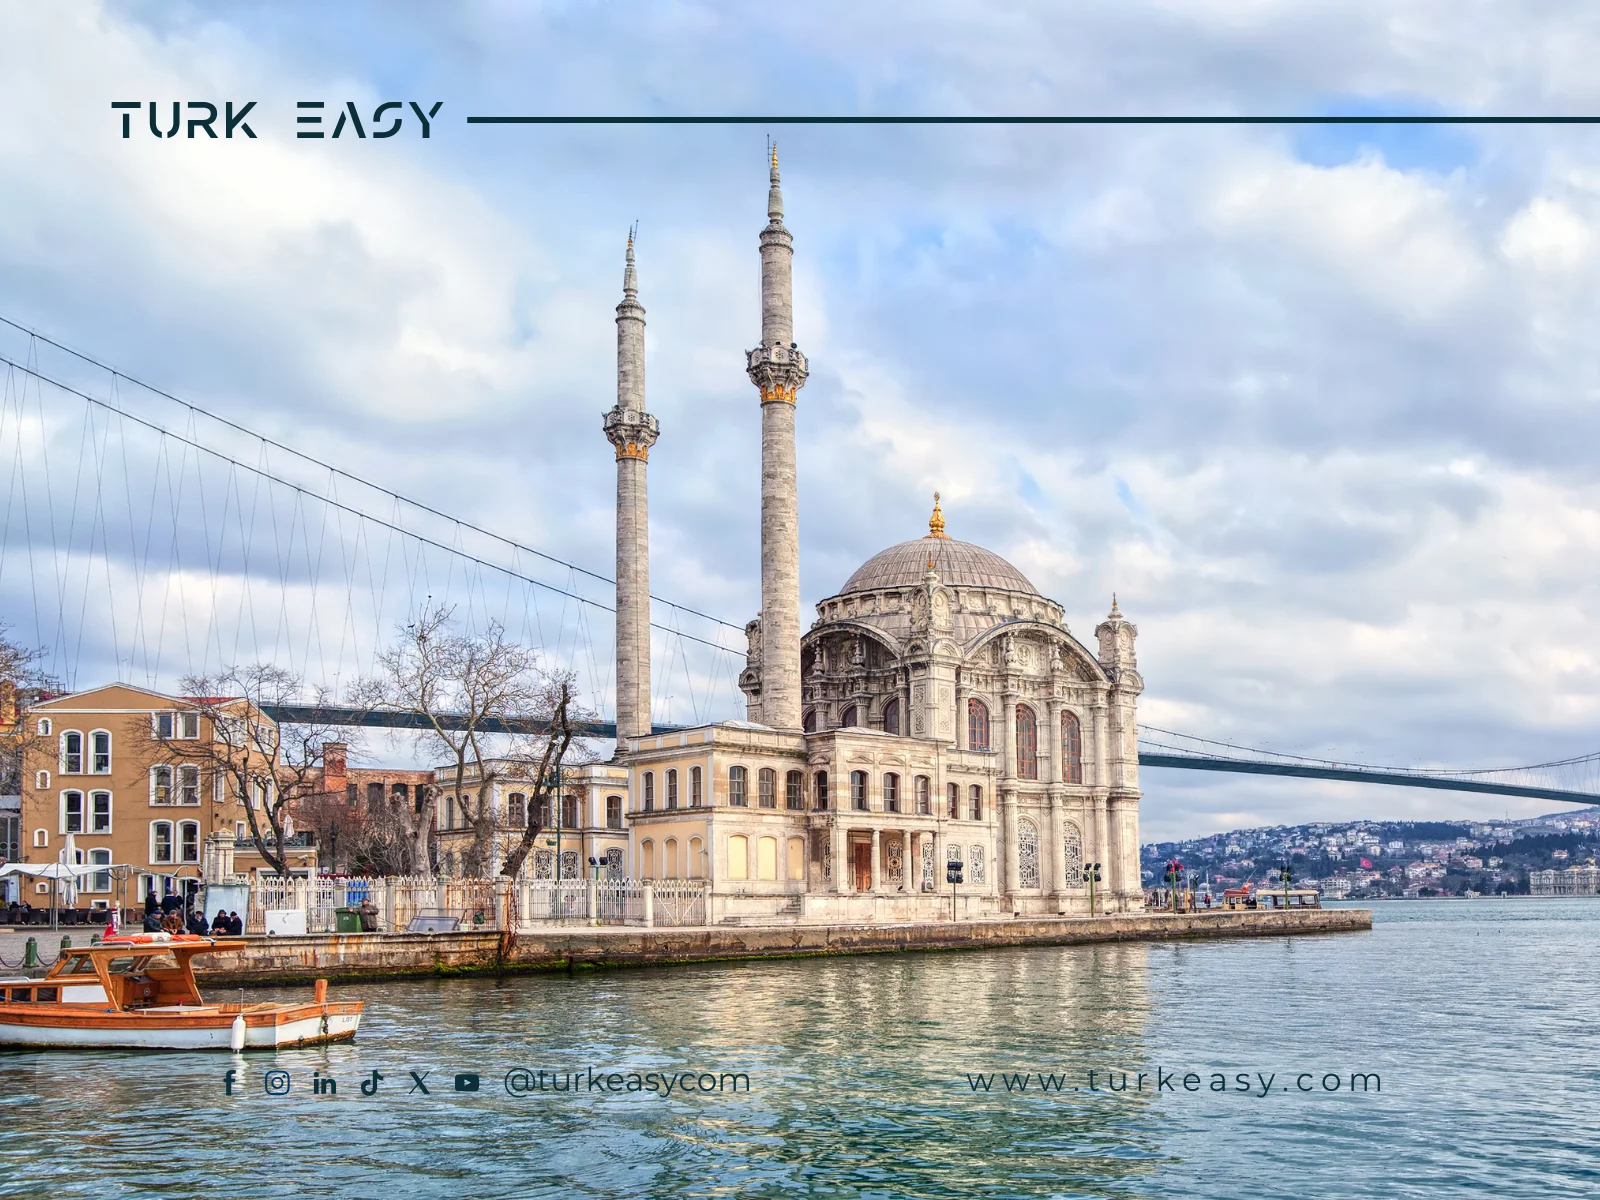 Туризм в Турции: преимущества и лучшие туры - Turk Easy